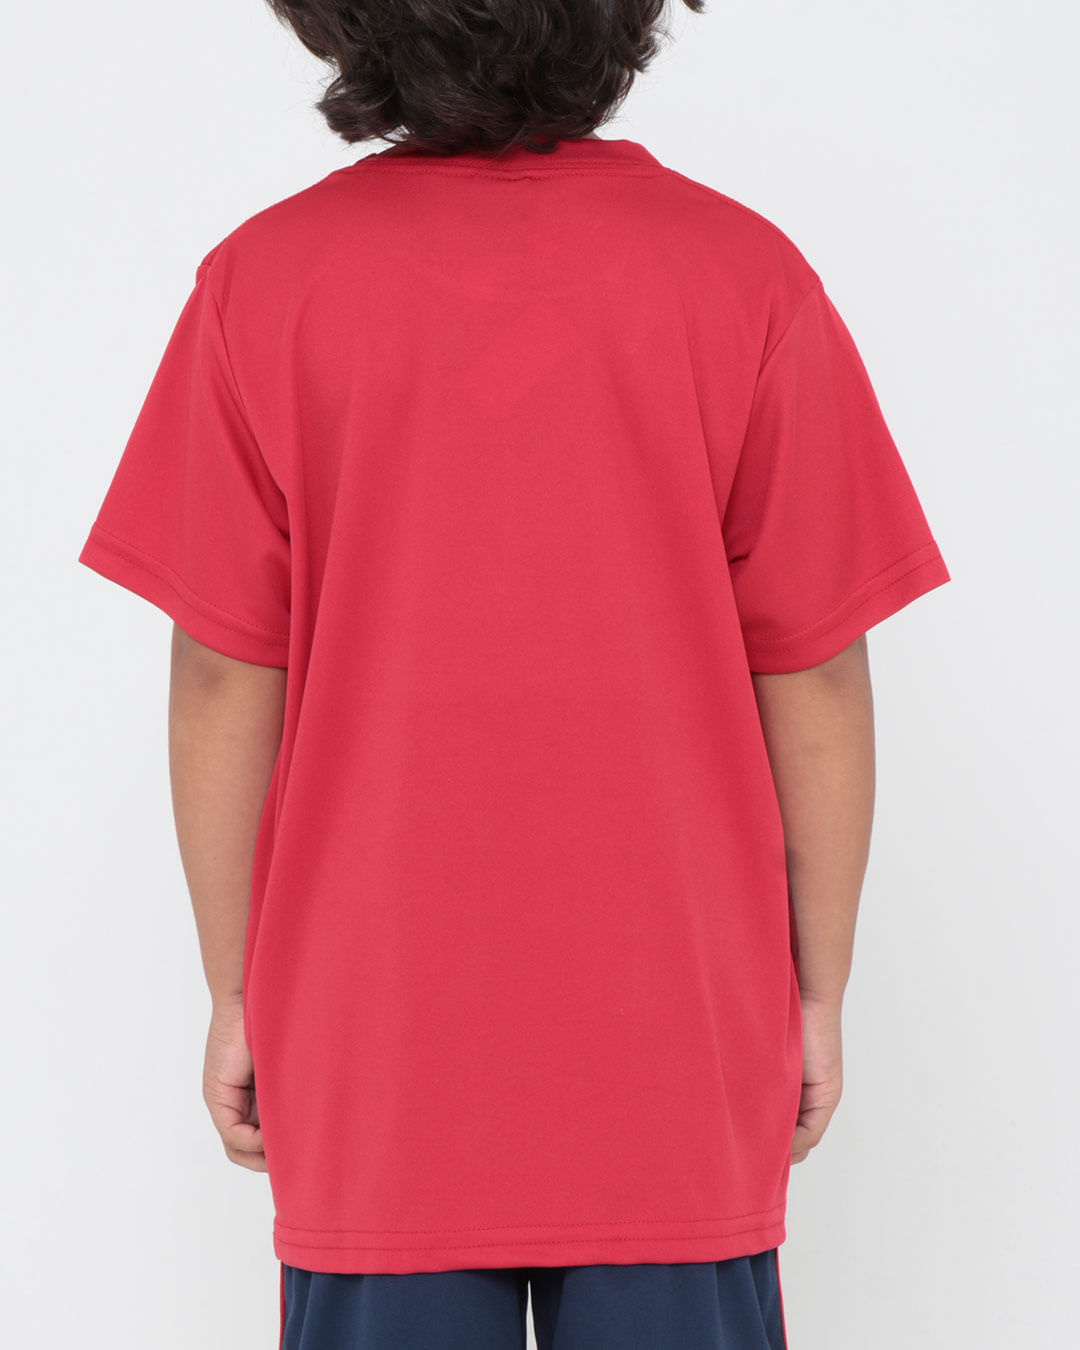 Camiseta-Trospr002-Mc-M410-Spfc---Vermelho-Medio